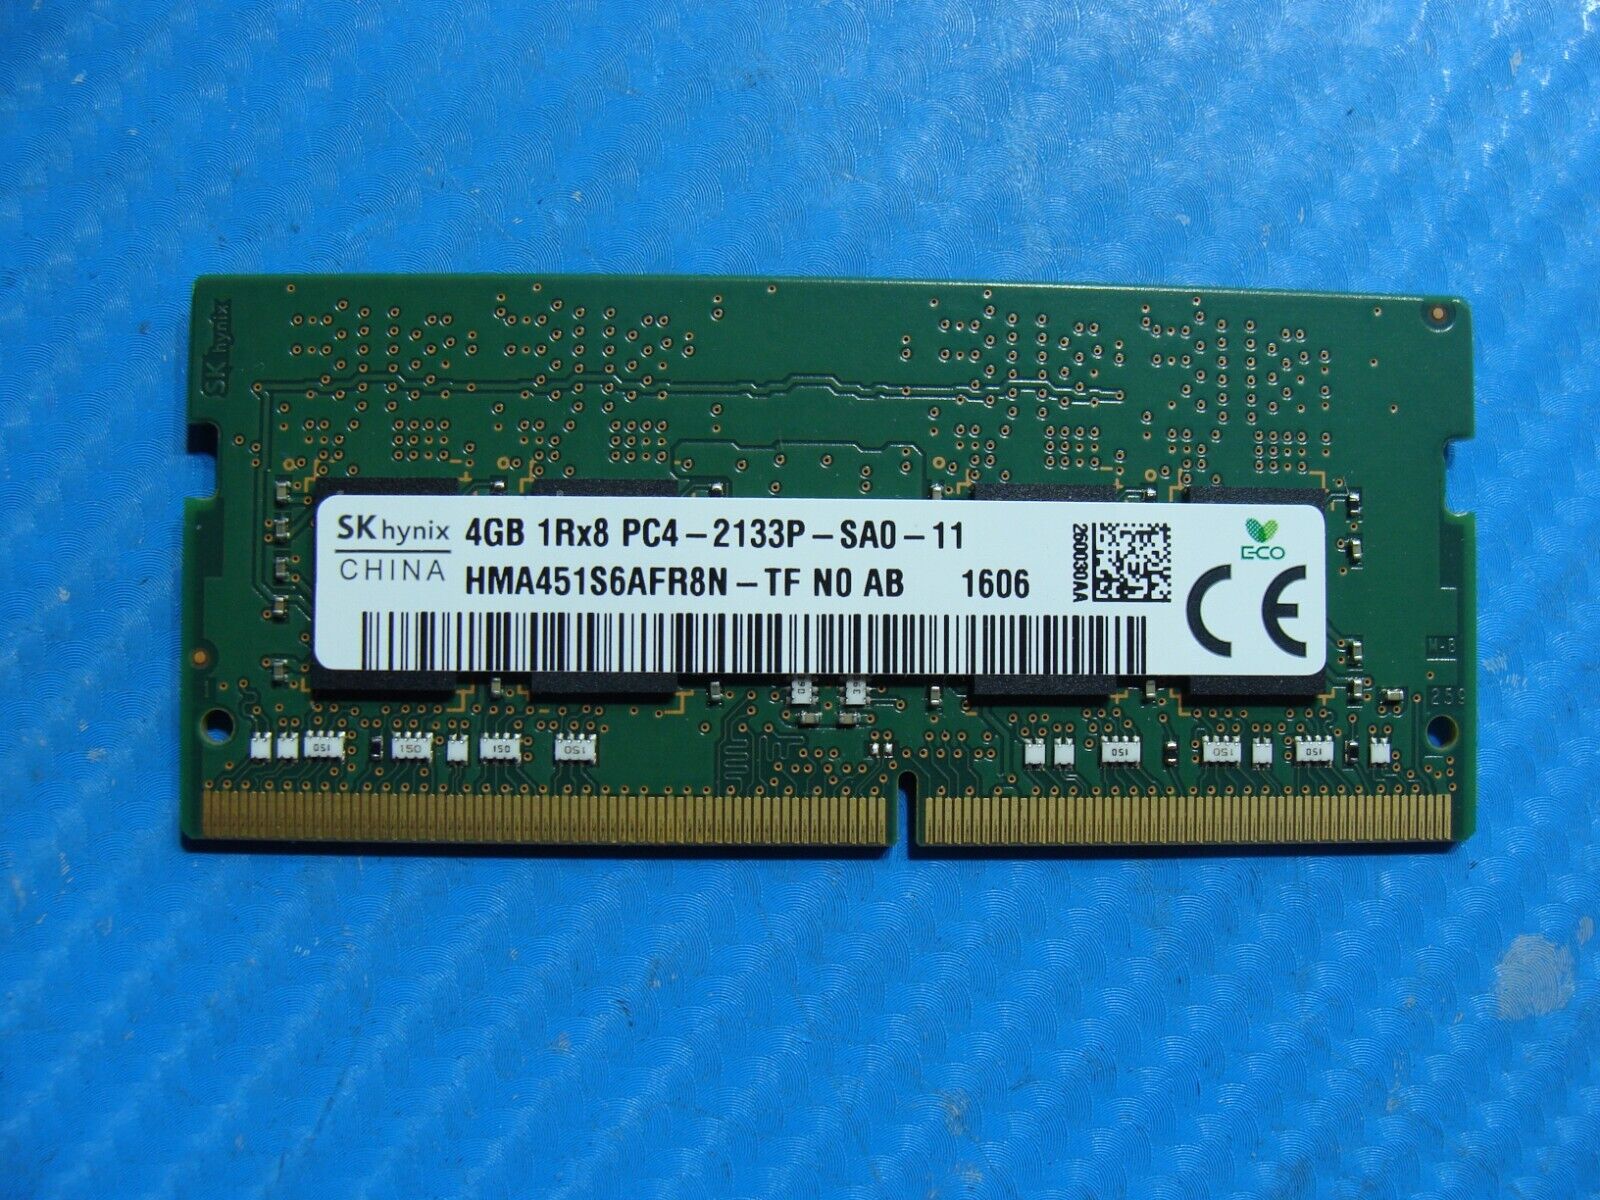 Asus GL502VT-BSI7N27 So-Dimm SK Hynix 4GB Memory RAM PC4-2133P